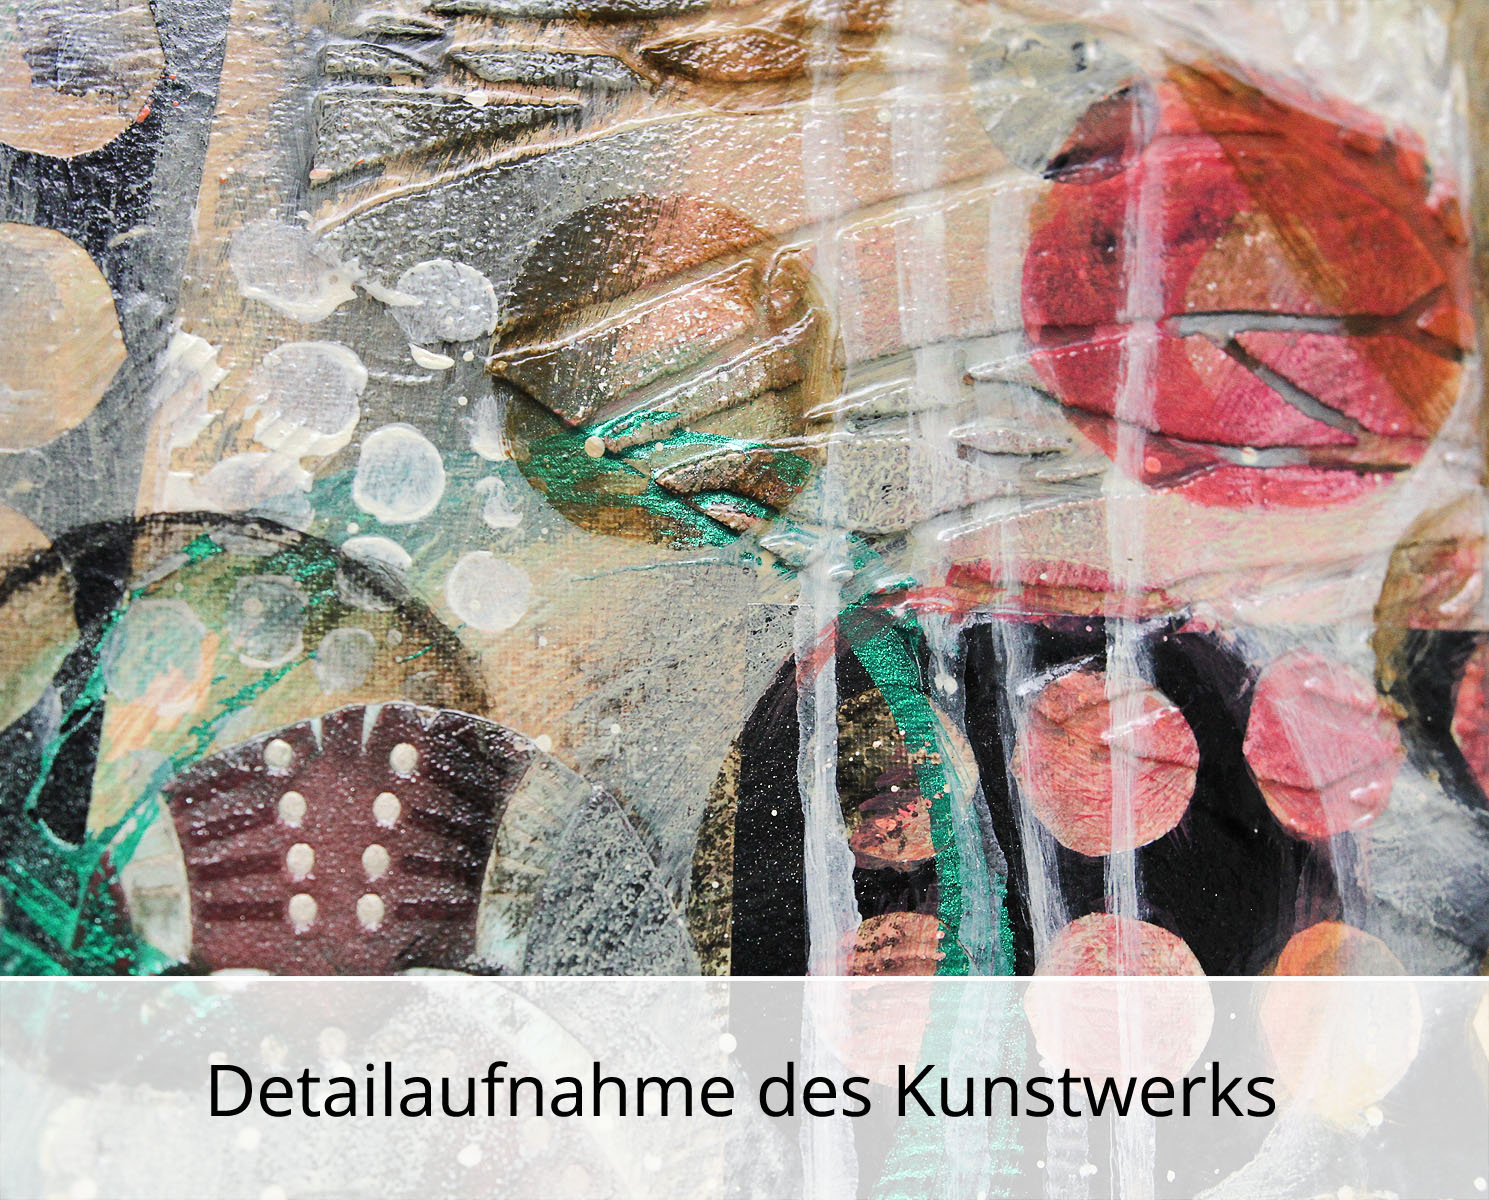 Abstrakte Malerei von Ewa Martens: "Alles wovon wir träumen", Original/Unikat